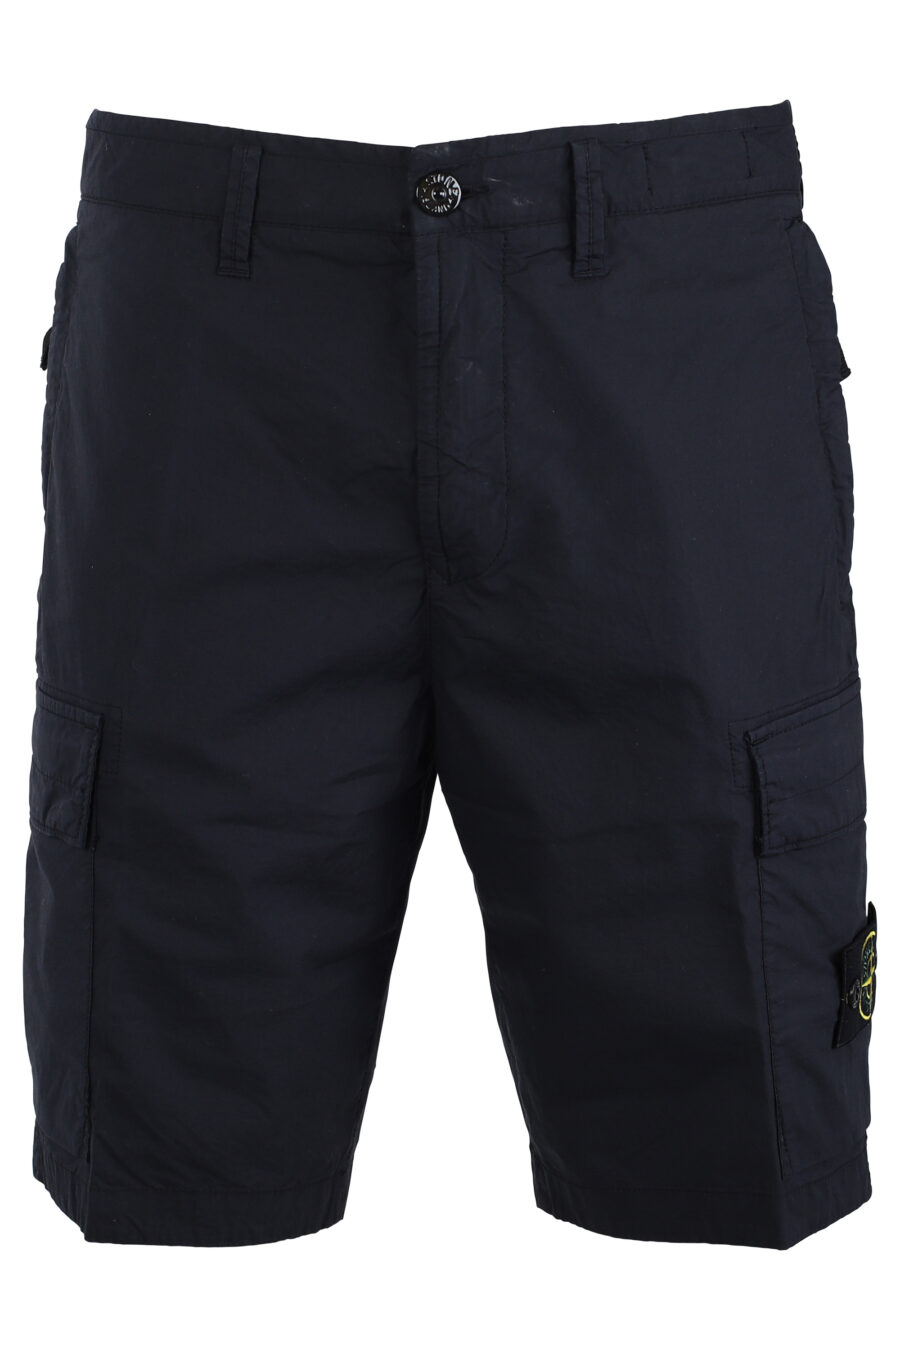 Pantalón corto midi azul estilo cargo - IMG 1696